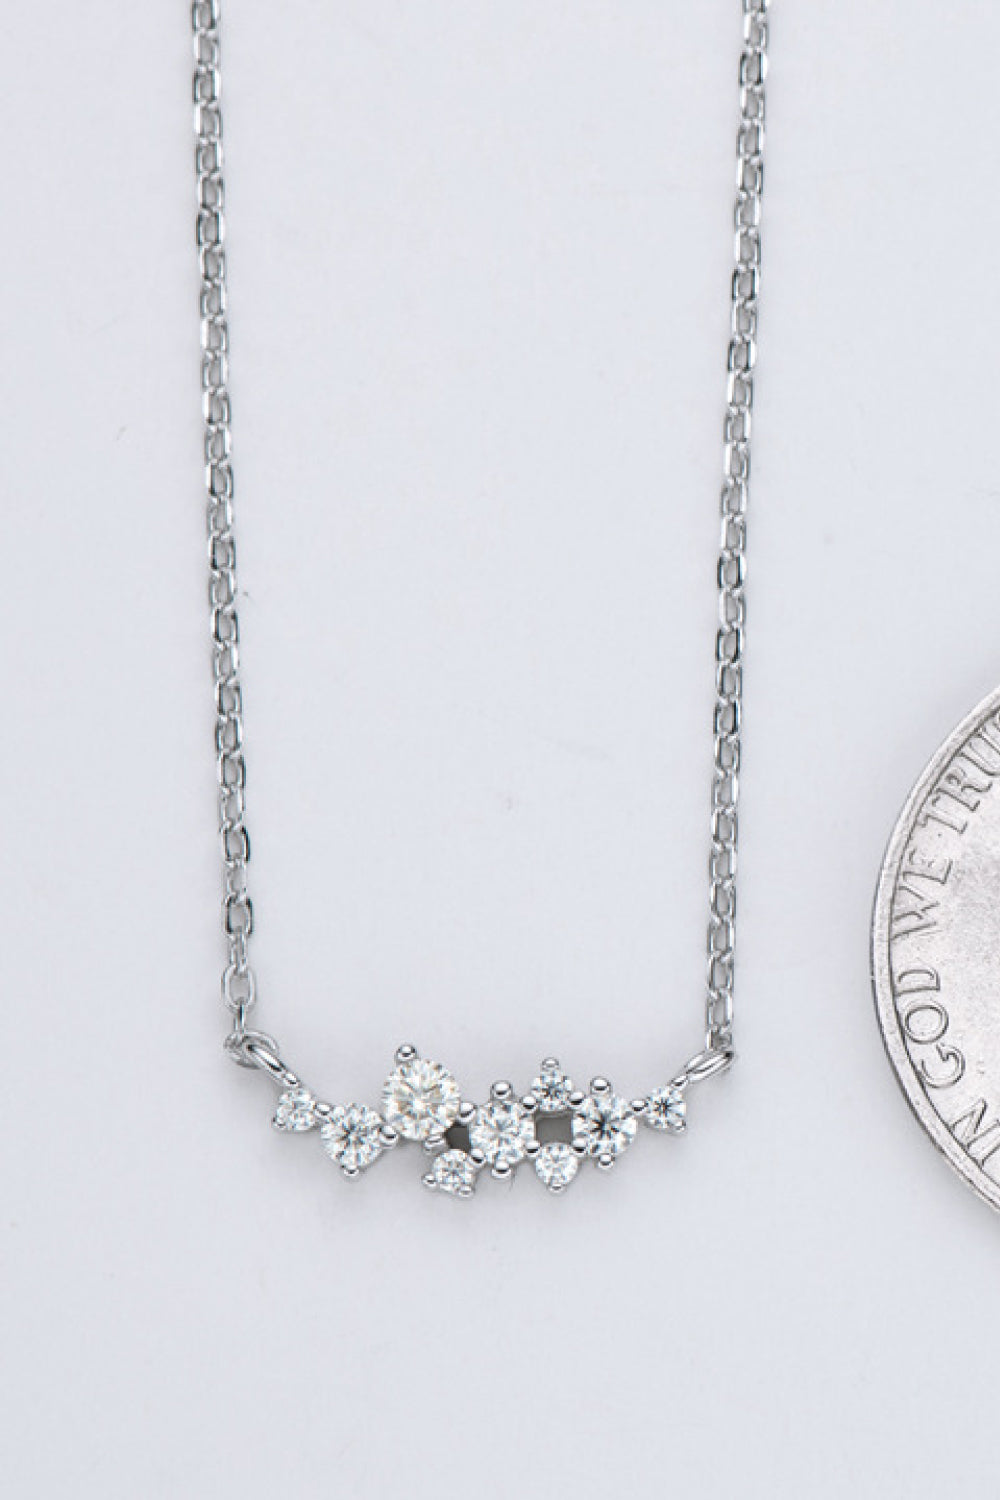 Get A Move On Moissanite Pendant Chain Necklace - DromedarShop.com Online Boutique